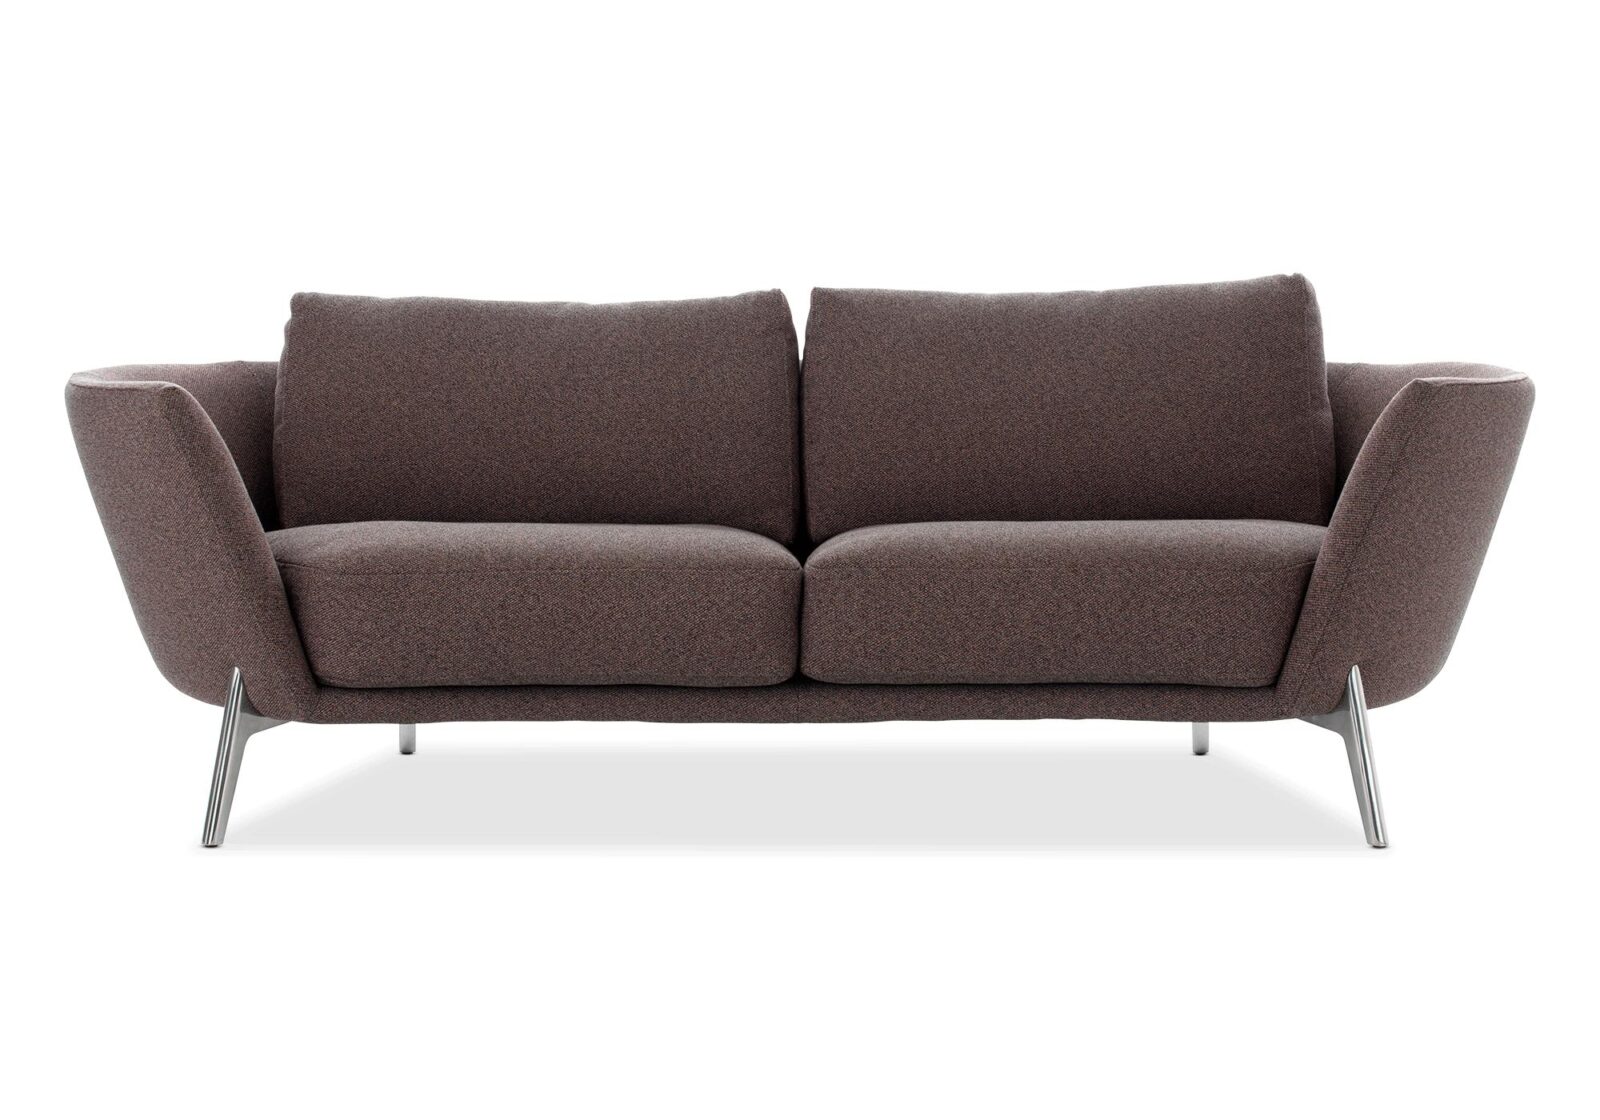 3er Sofa Rego  Vintage Style. Bezug: Stoff. Farbe: Braun. Erhältlich bei Möbel Gallati.